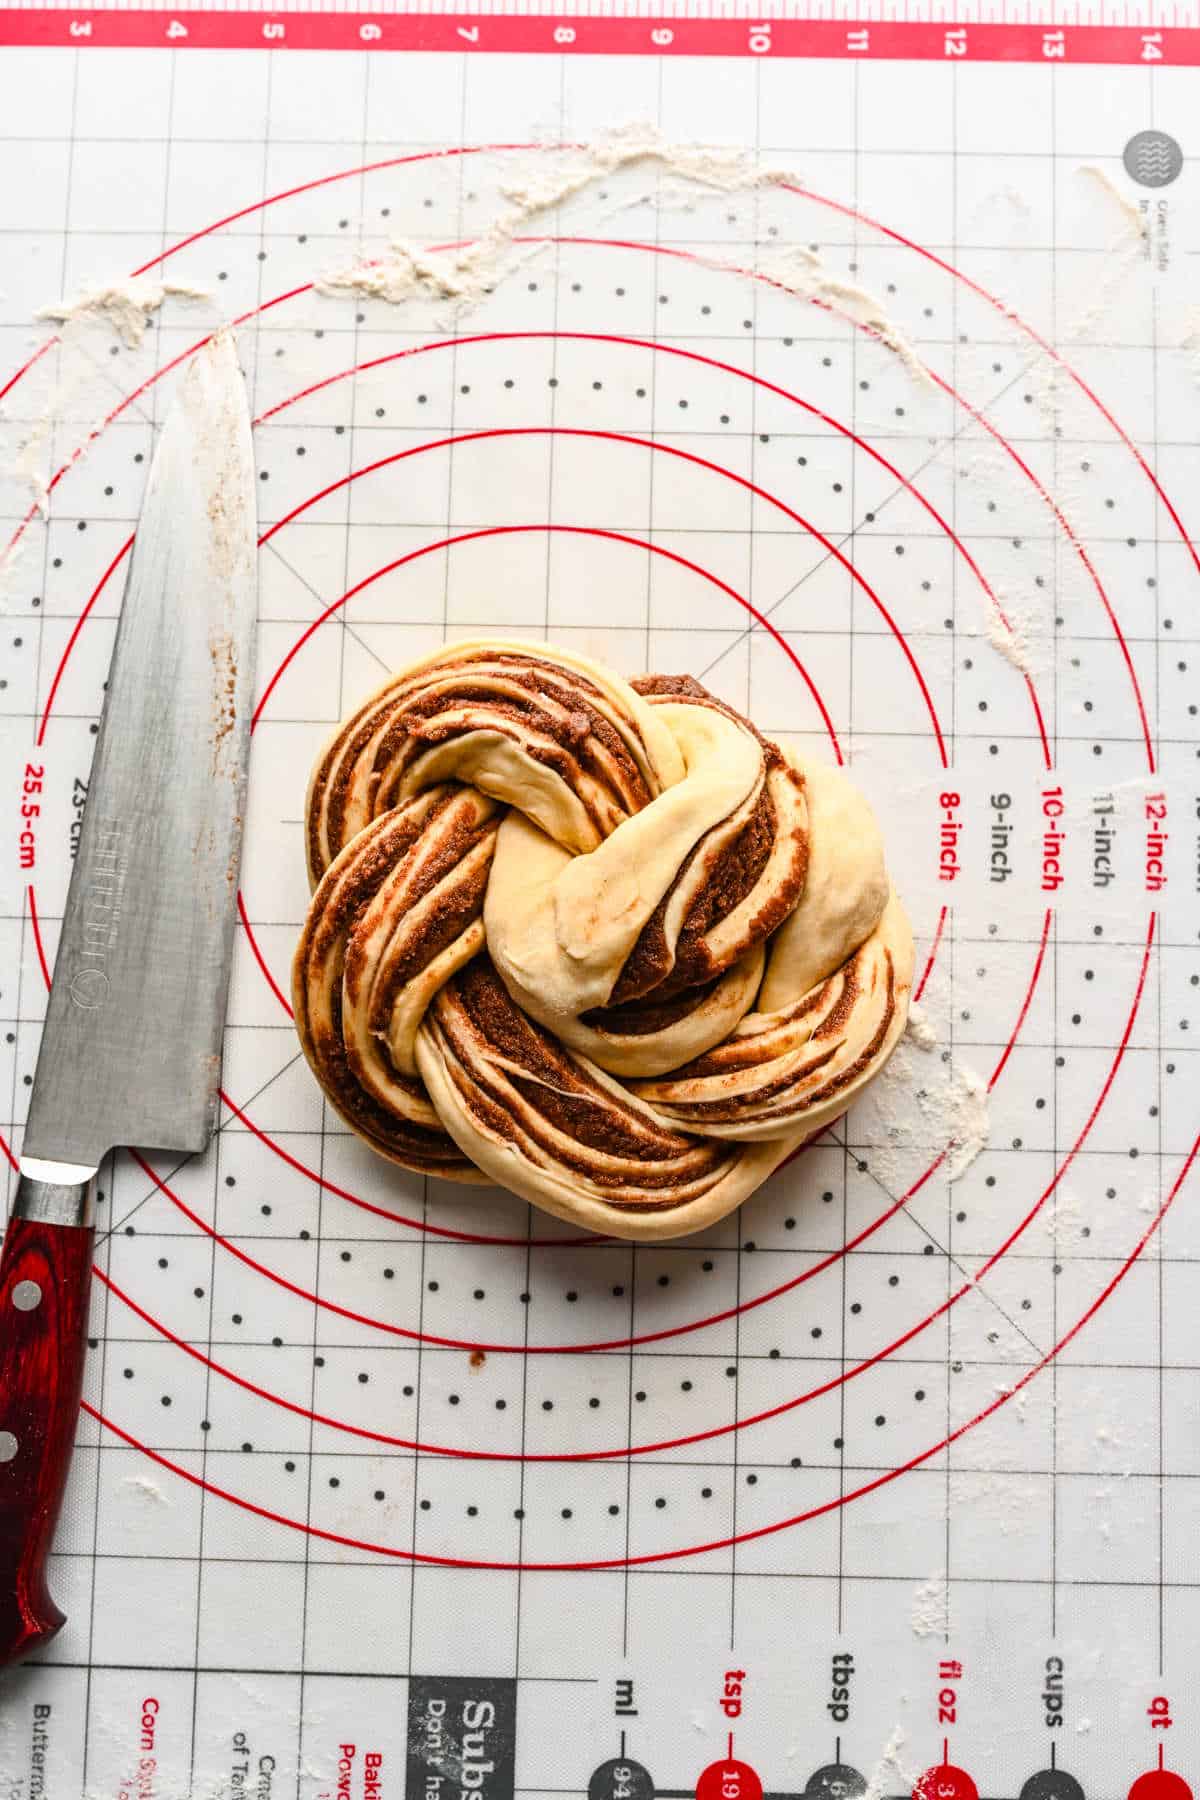 Braided cinnamon bread dough in a coil on a baking mat. 